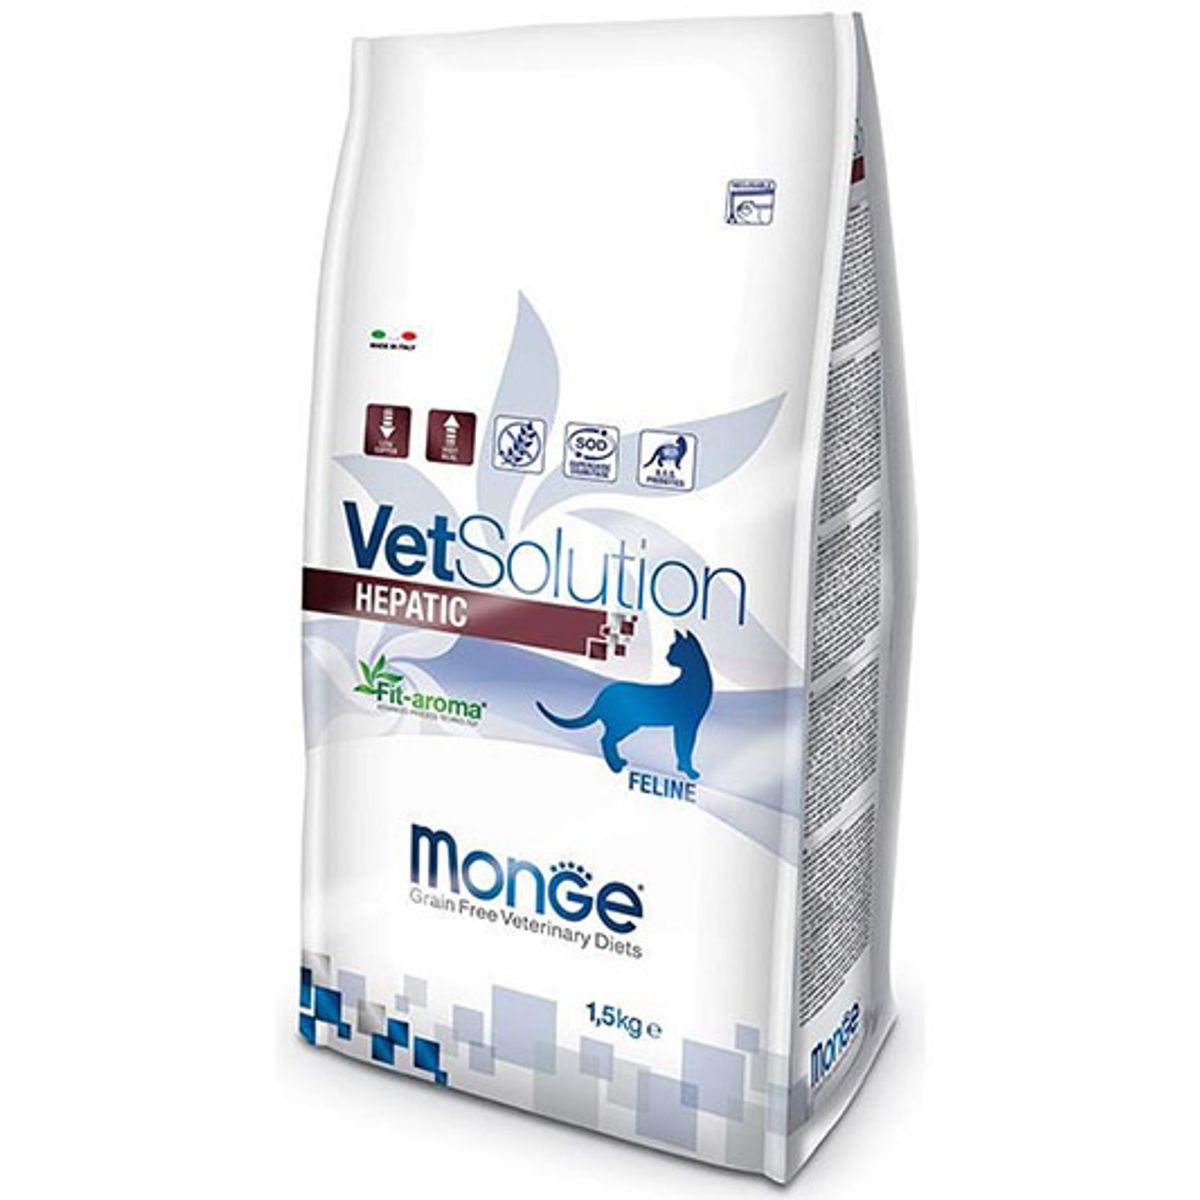 Monge Vetsolution Hepatic Feline, 1.5 kg MONGE